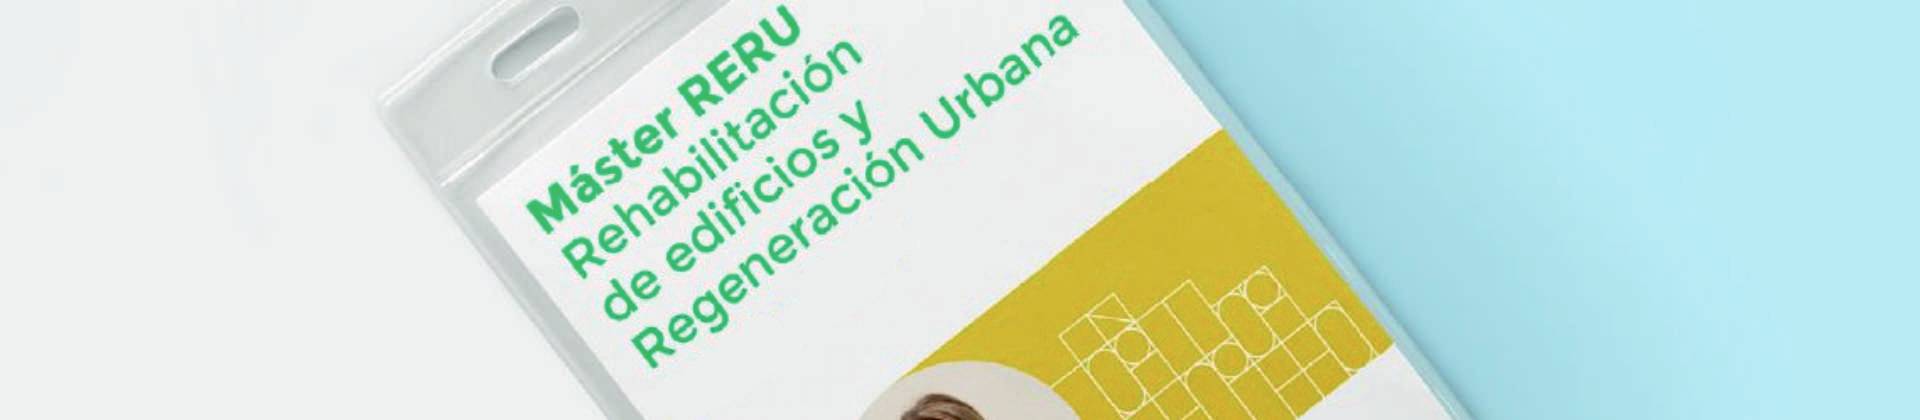 #másterRERU_22-23: INTRODUCCIÓN A LA REHABILITACIÓN DE EDIFICIOS Y LA REGENERACIÓN URBANA